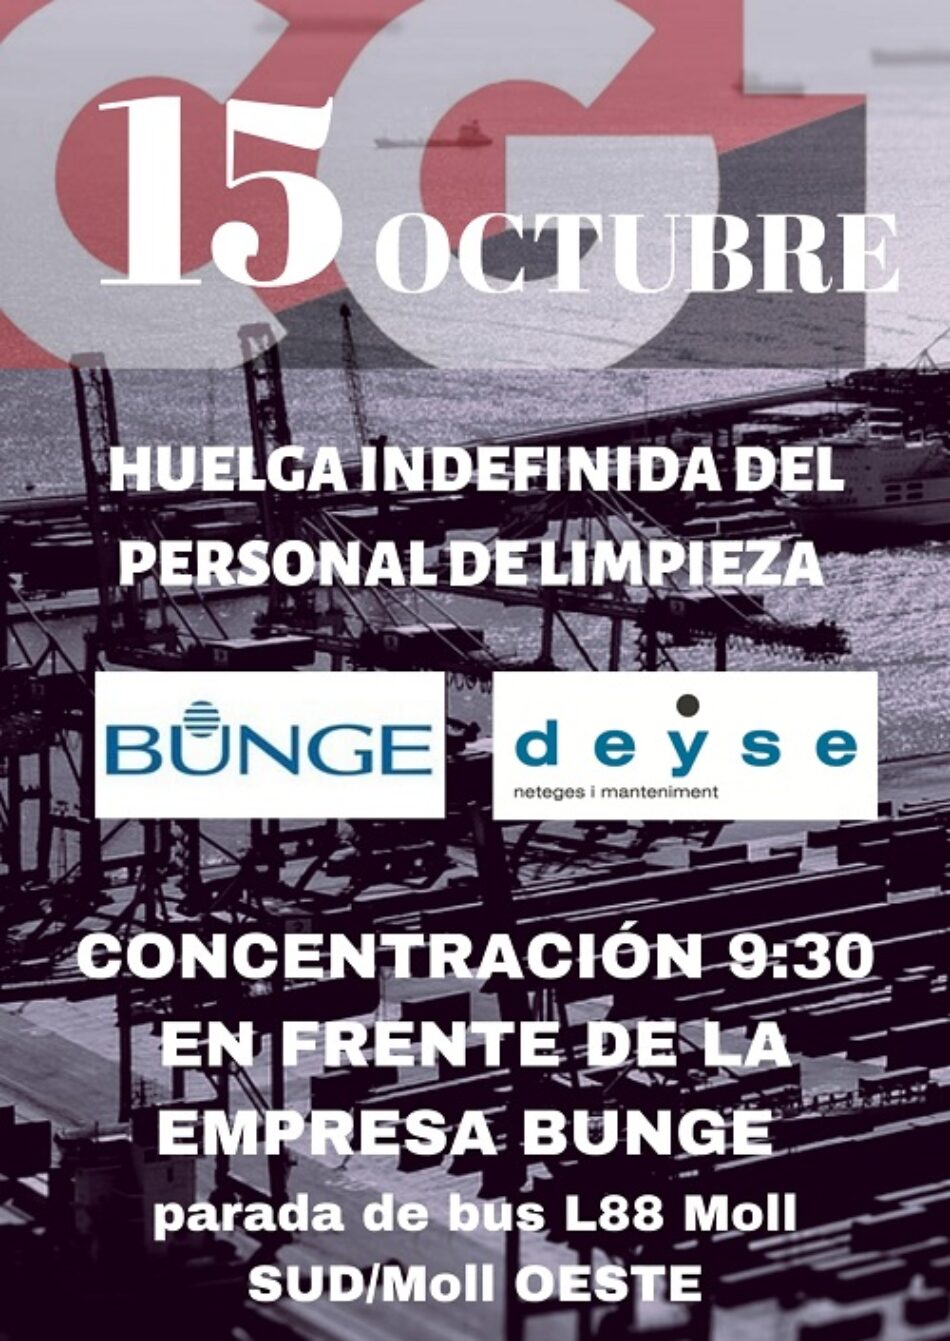 El personal de limpieza de Bunge (Barcelona), en huelga indefinida desde el próximo 15 de octubre